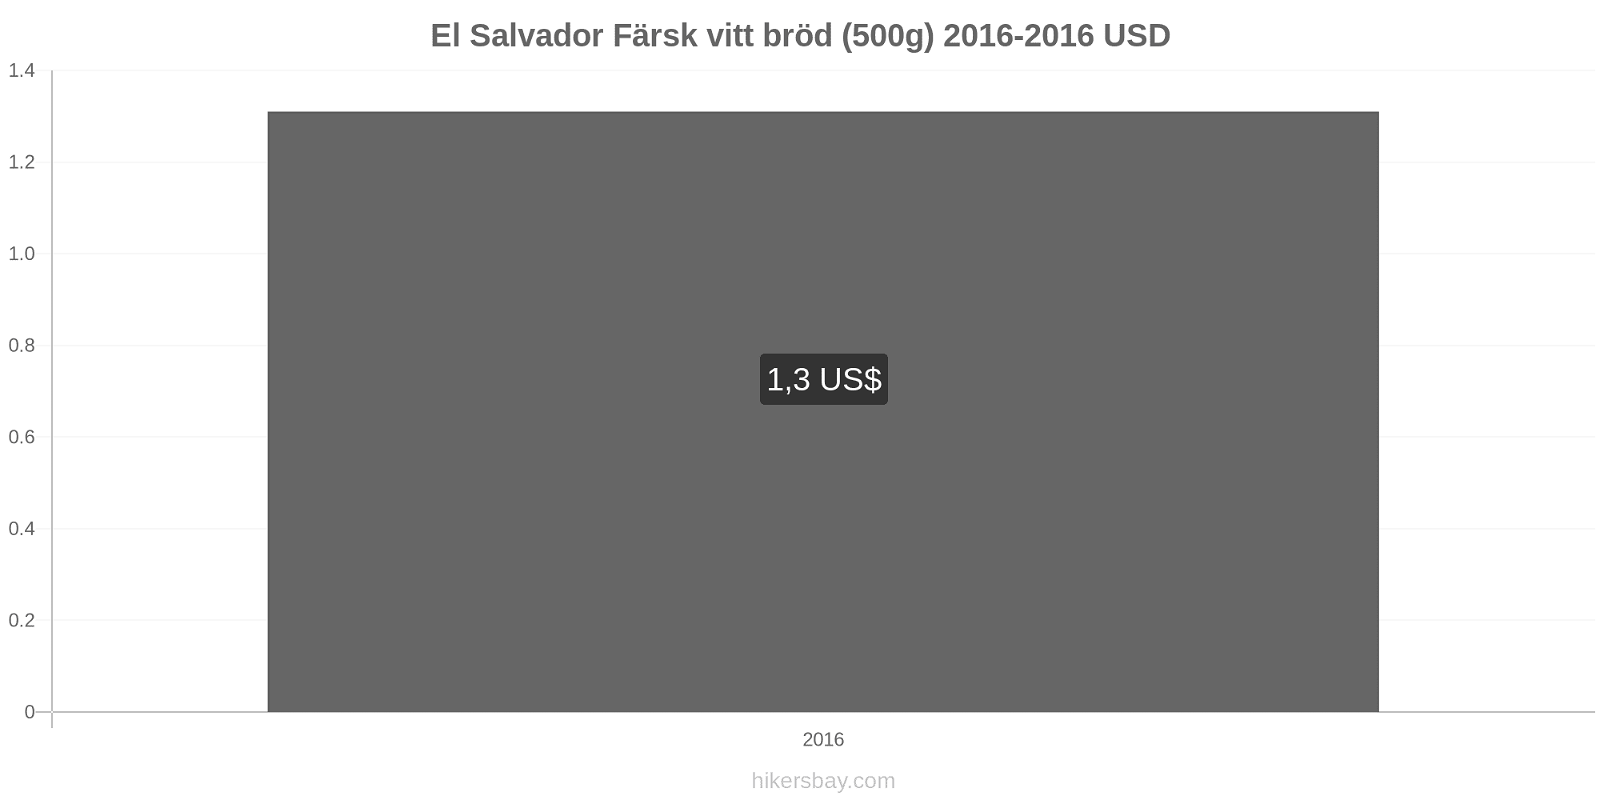 El Salvador prisändringar Färsk vitt bröd (500g) hikersbay.com